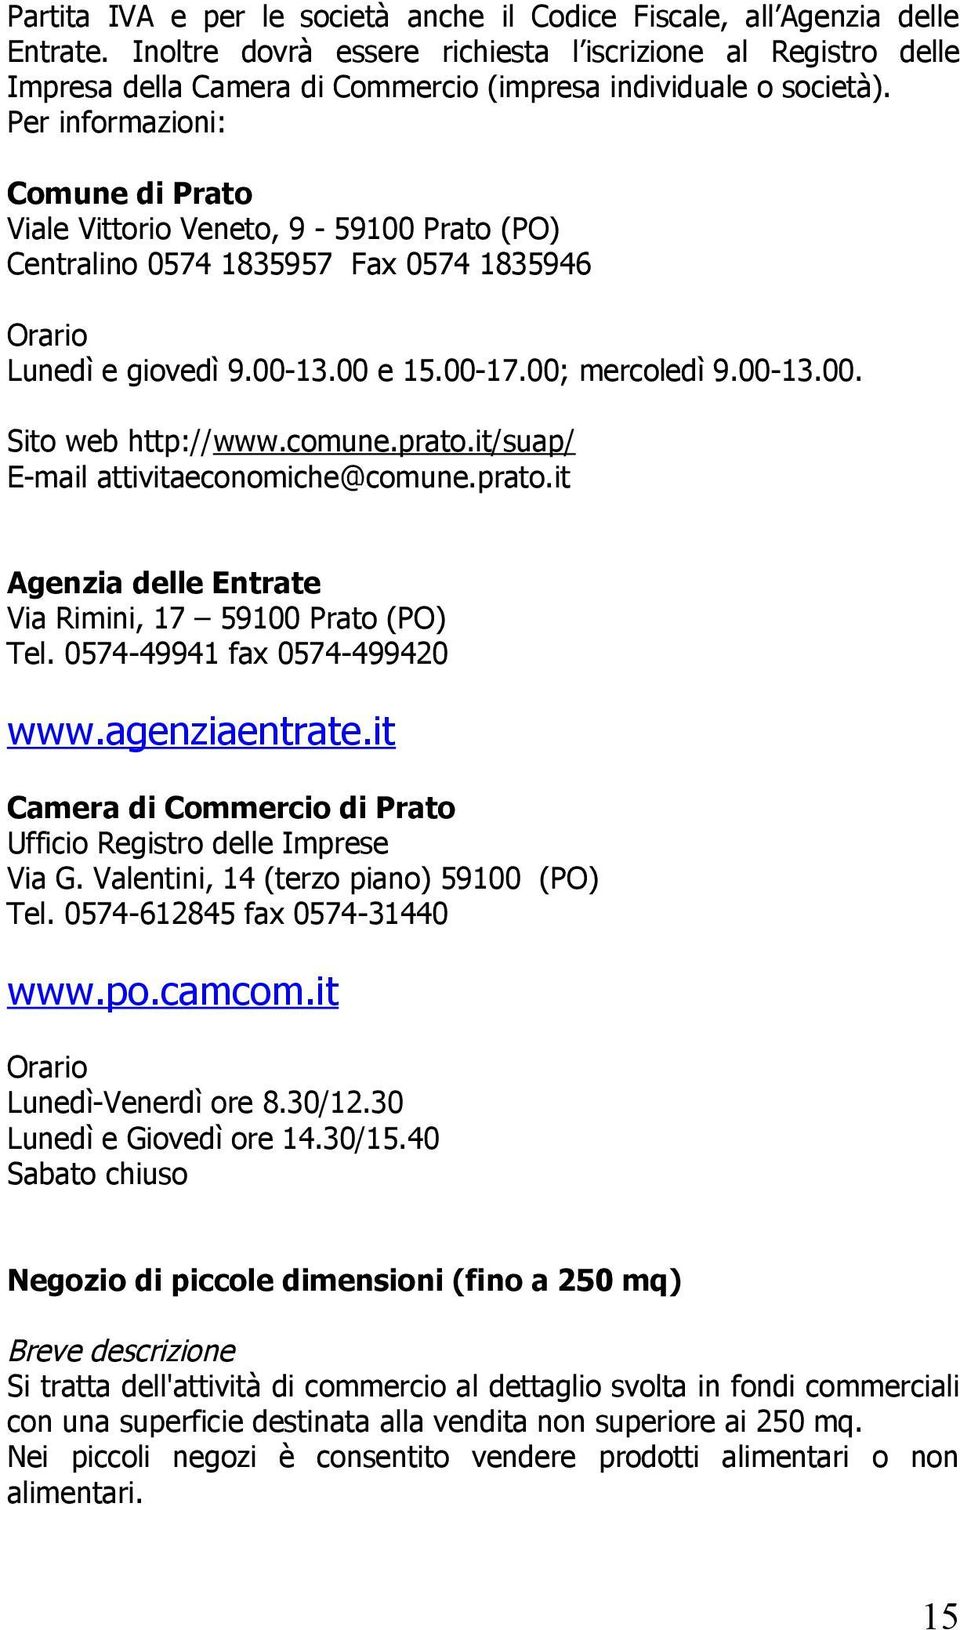 Per informazioni: Comune di Prato Viale Vittorio Veneto, 9-59100 Prato (PO) Centralino 0574 1835957 Fax 0574 1835946 Orario Lunedì e giovedì 9.00-13.00 e 15.00-17.00; mercoledì 9.00-13.00. Sito web http://www.